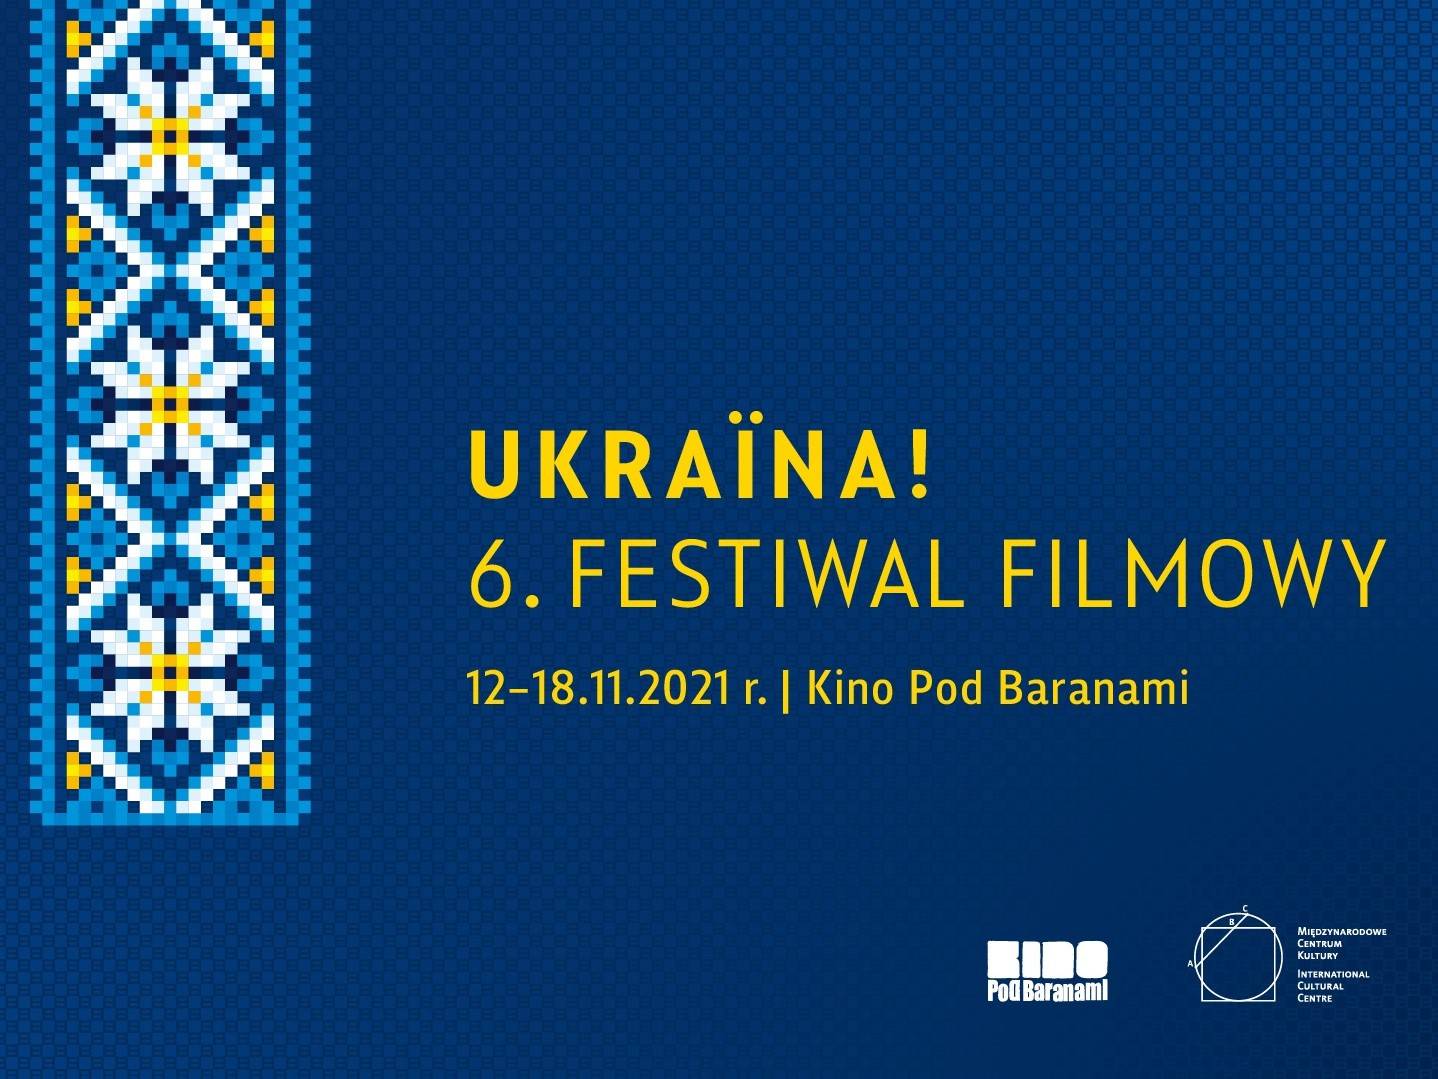 Ukraina! 6. Festiwal Filmowy w Kinie Pod Baranami